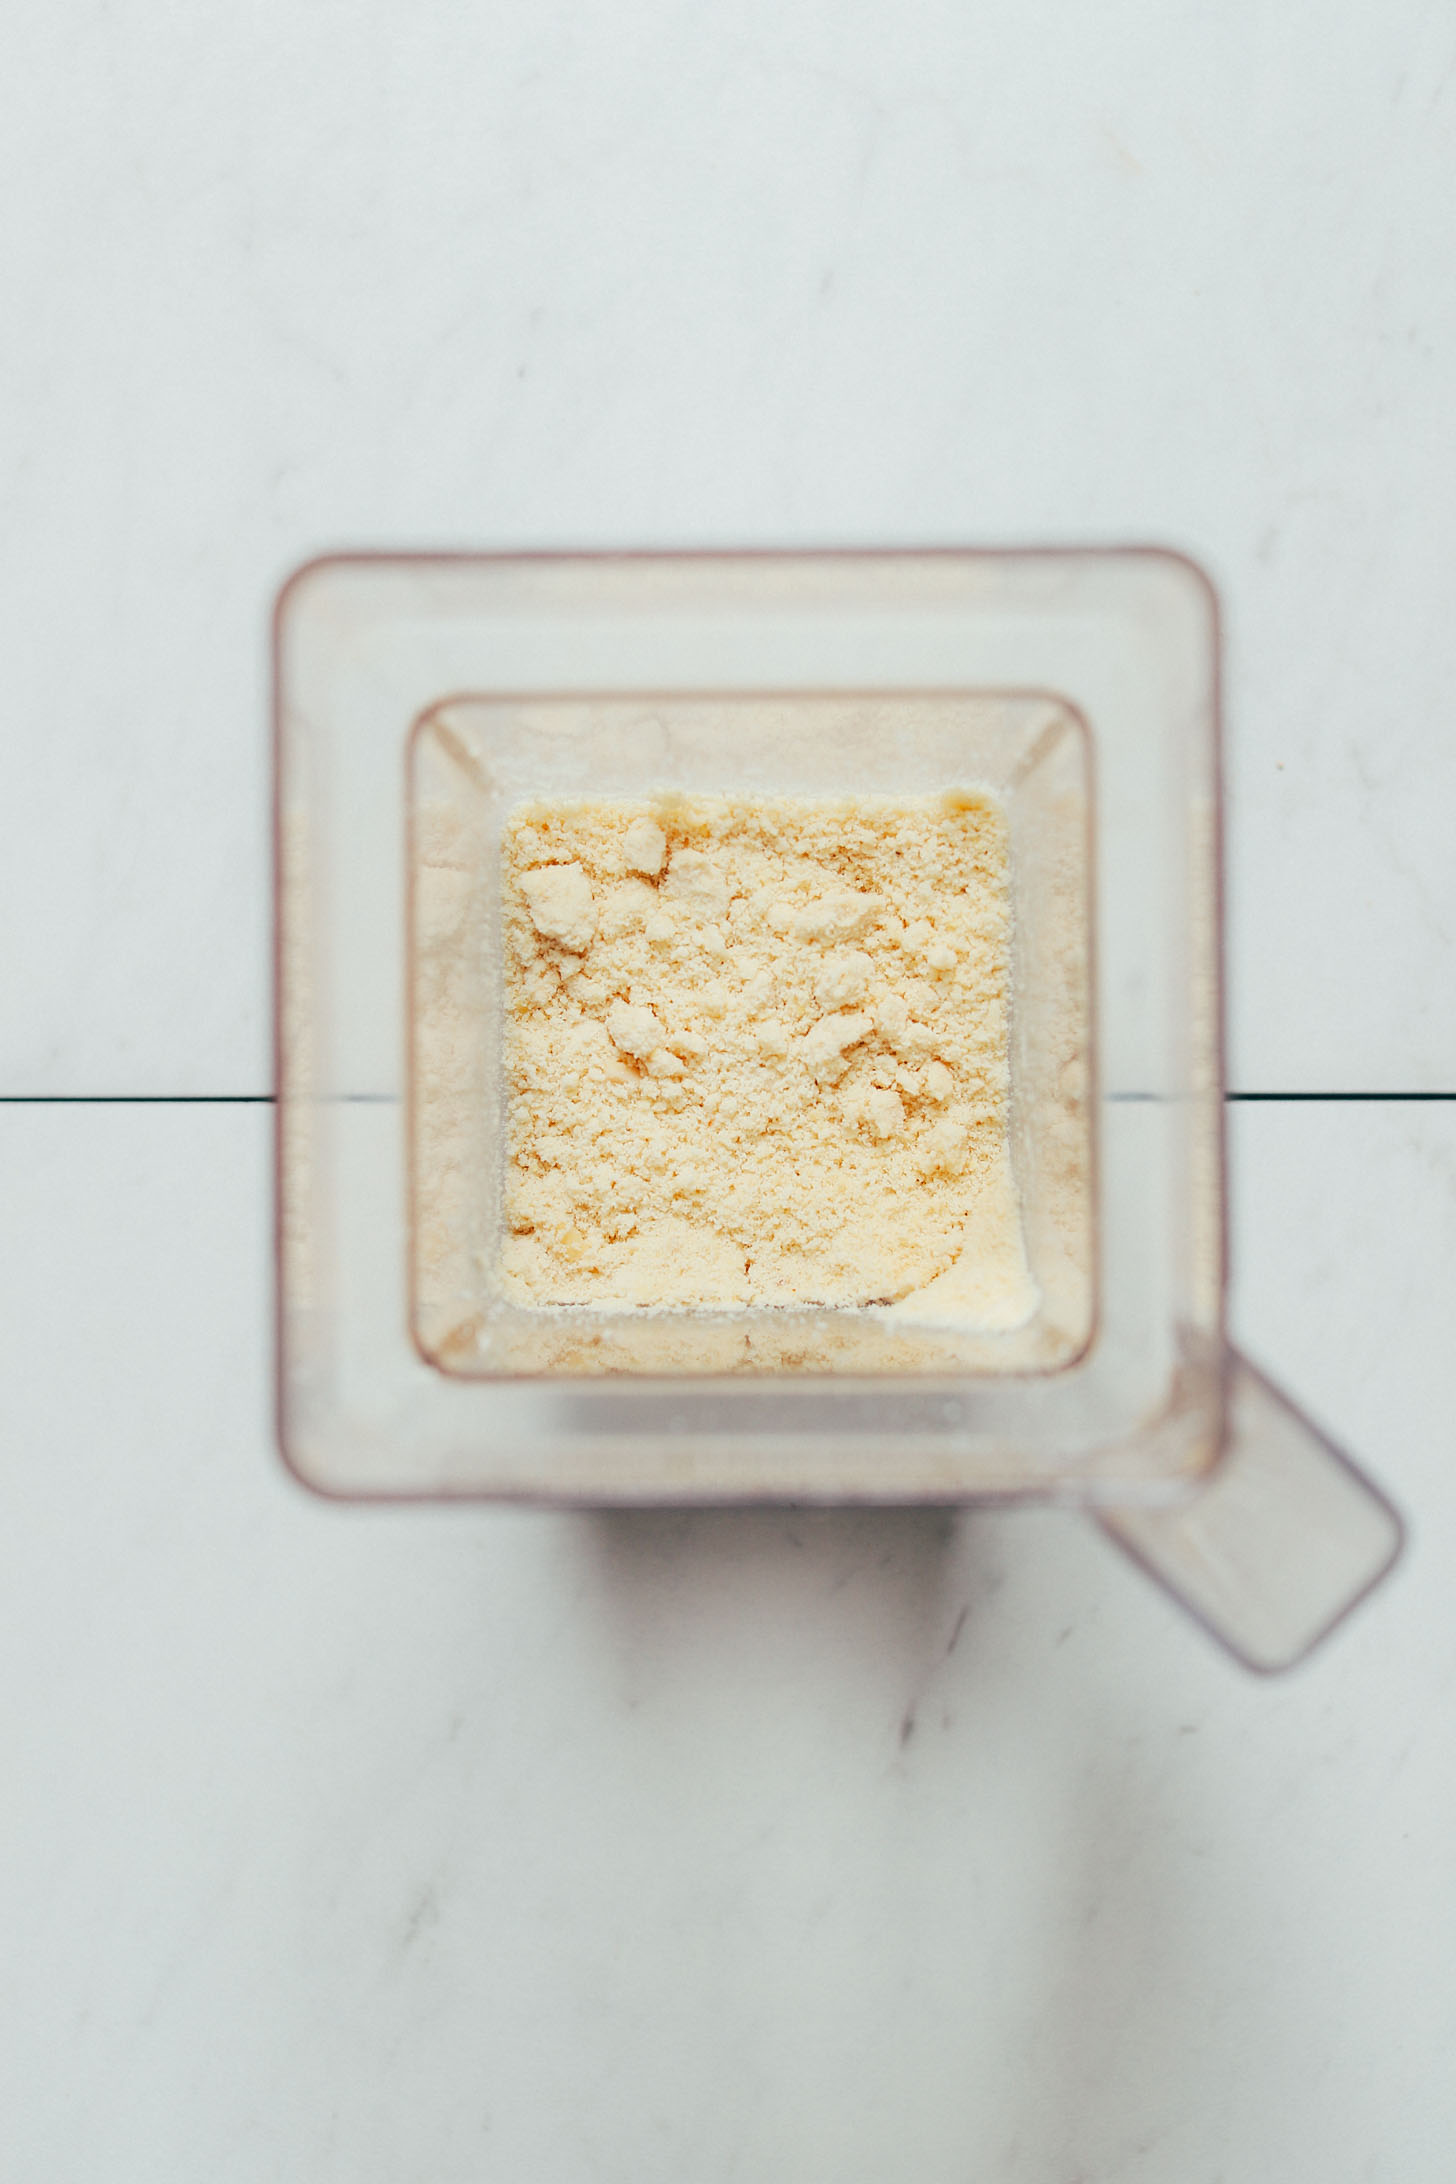 Blender of homemade almond flour